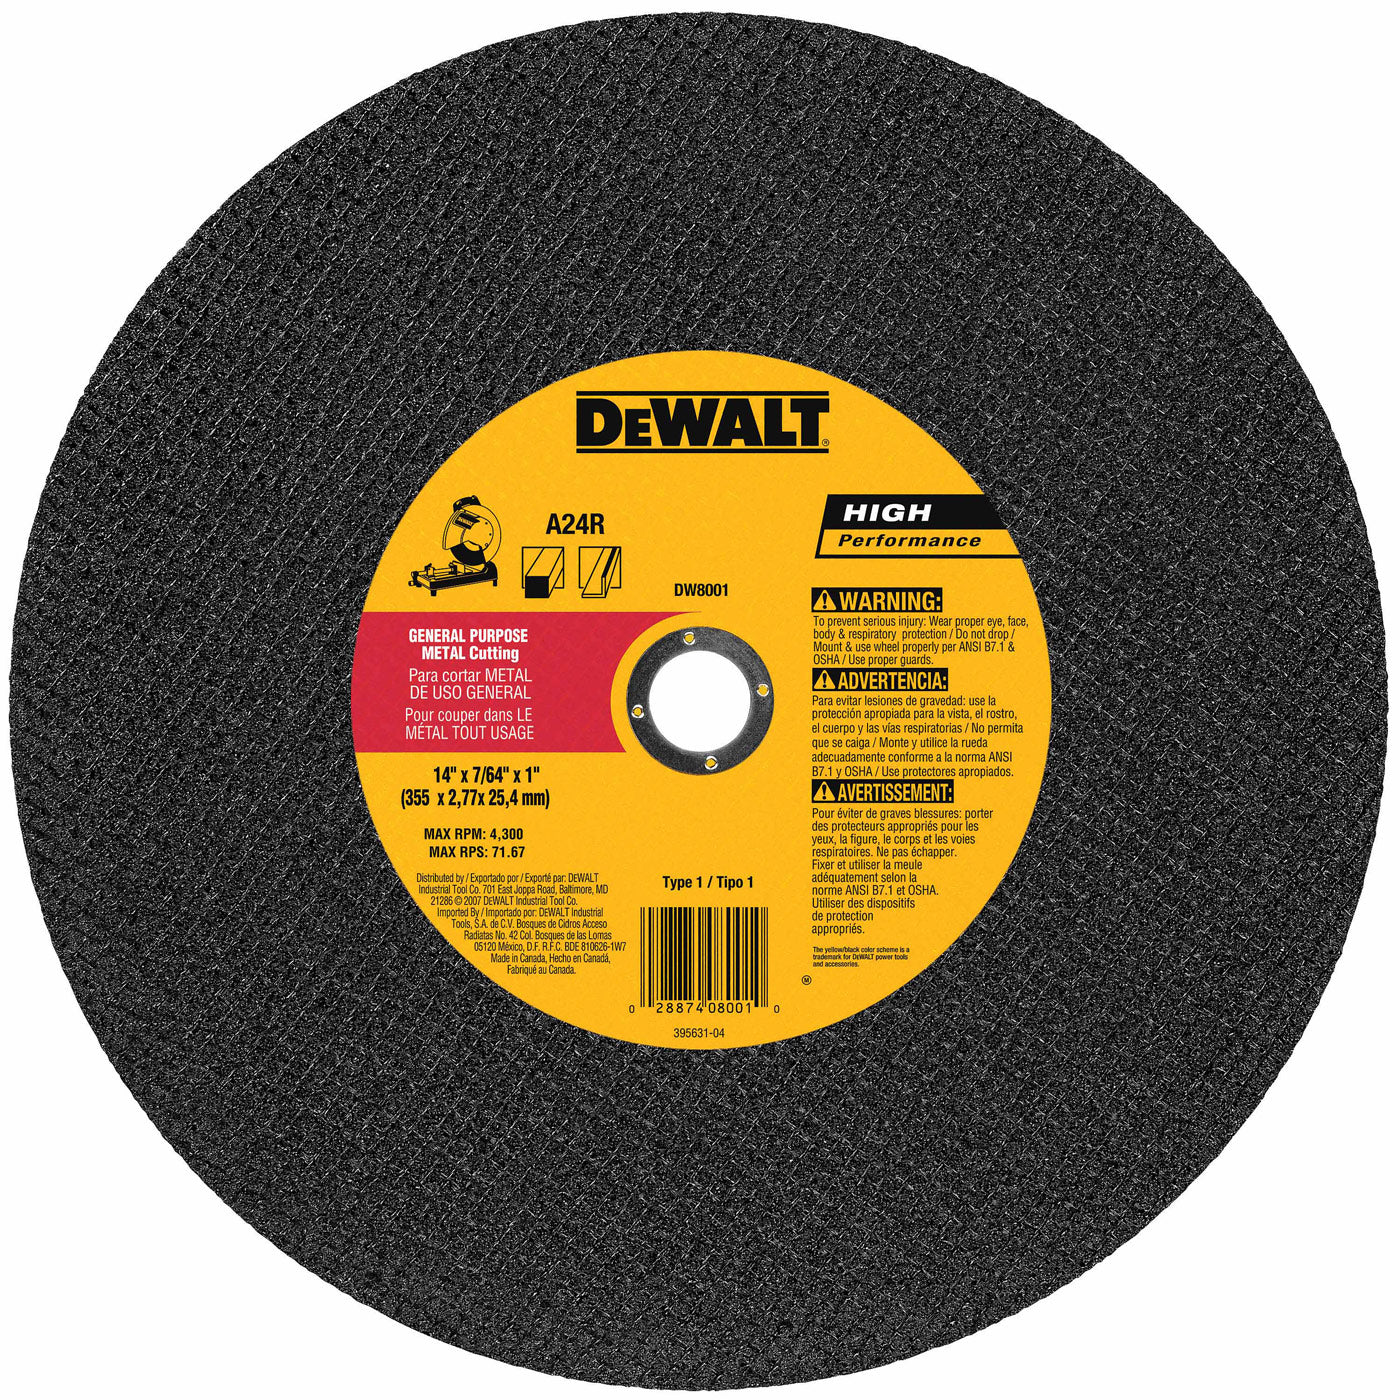 DeWalt DW8001 14" X 7/64" X 1" General Purpose Chop Saw Wheel